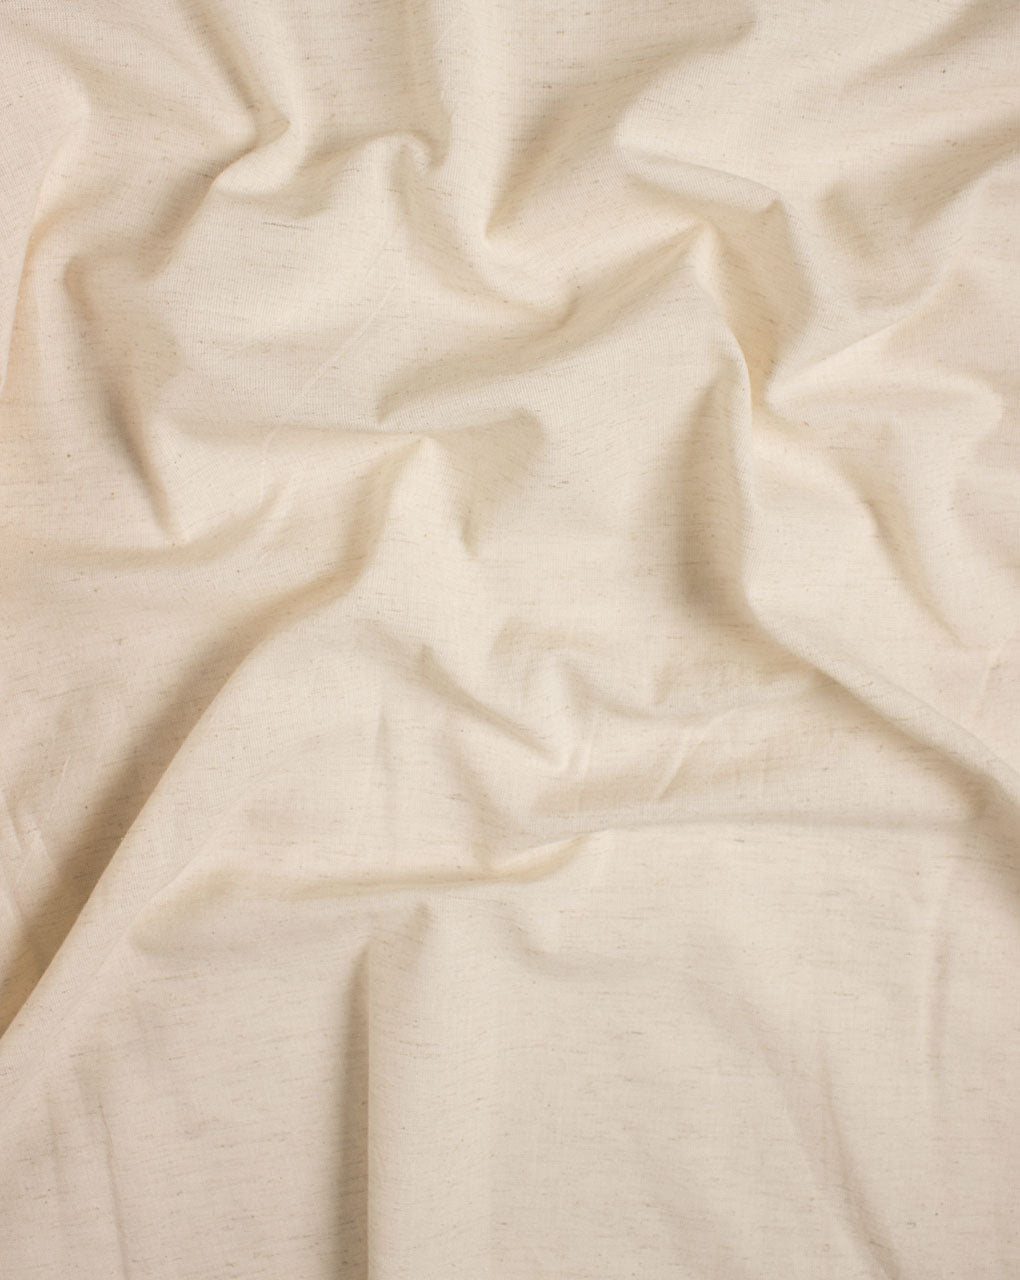 Greige 2/40s Cotton x 20s Flex Fabric